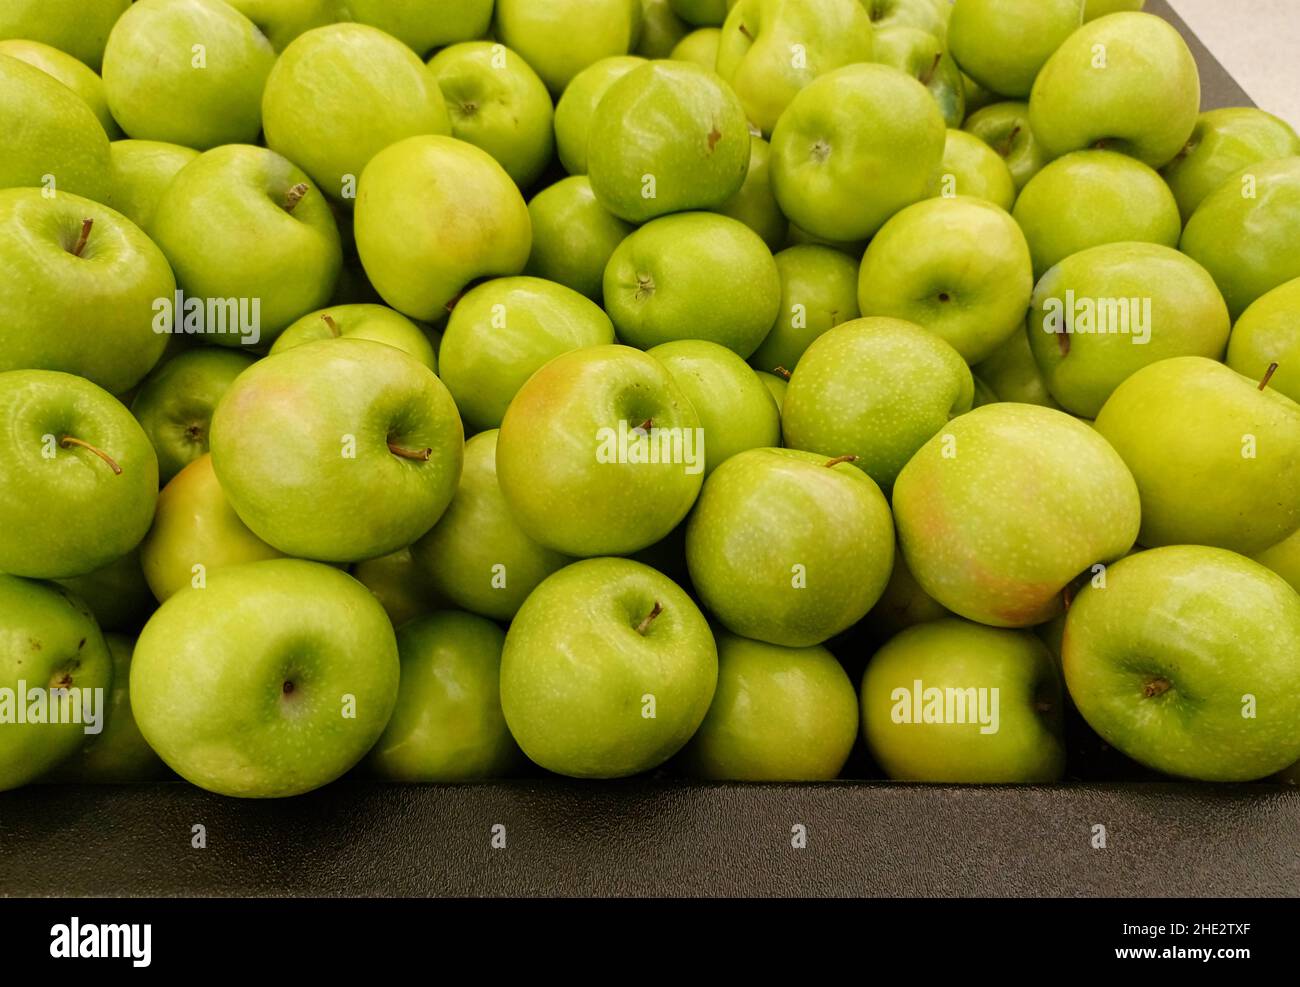 Stockfotografie in - Reife verstreut Nahaufnahme traditionellen von Äpfel Smith, Alamy lose einem Gemüsemarkt, Granny